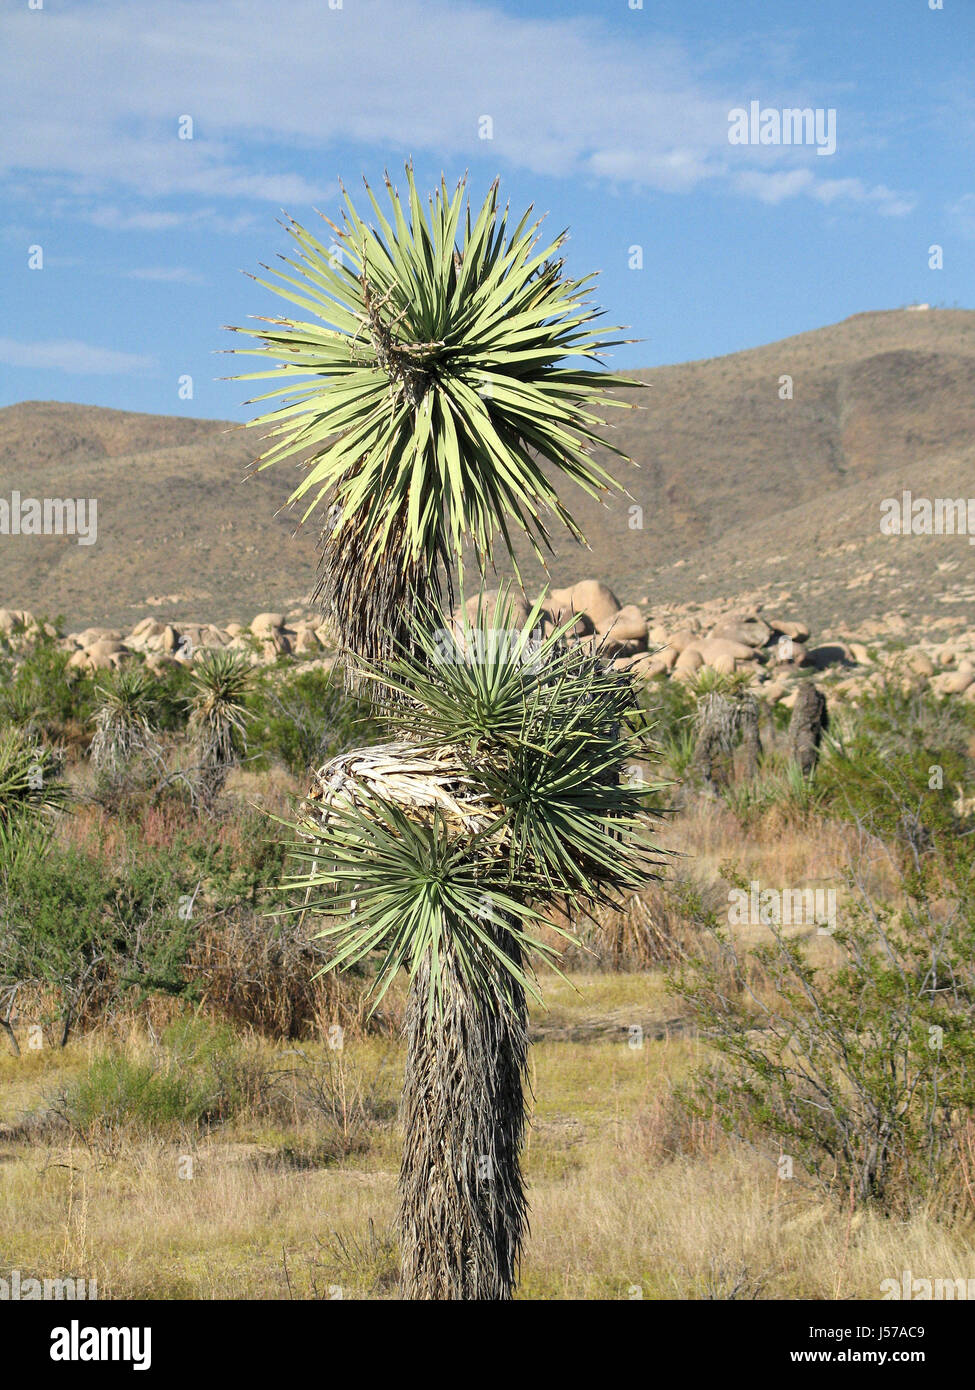 Baum Wüstenlandschaft Büsche Geröll Hitze Pflanzen Kalifornien Vegetation  Sand sand Stockfotografie - Alamy